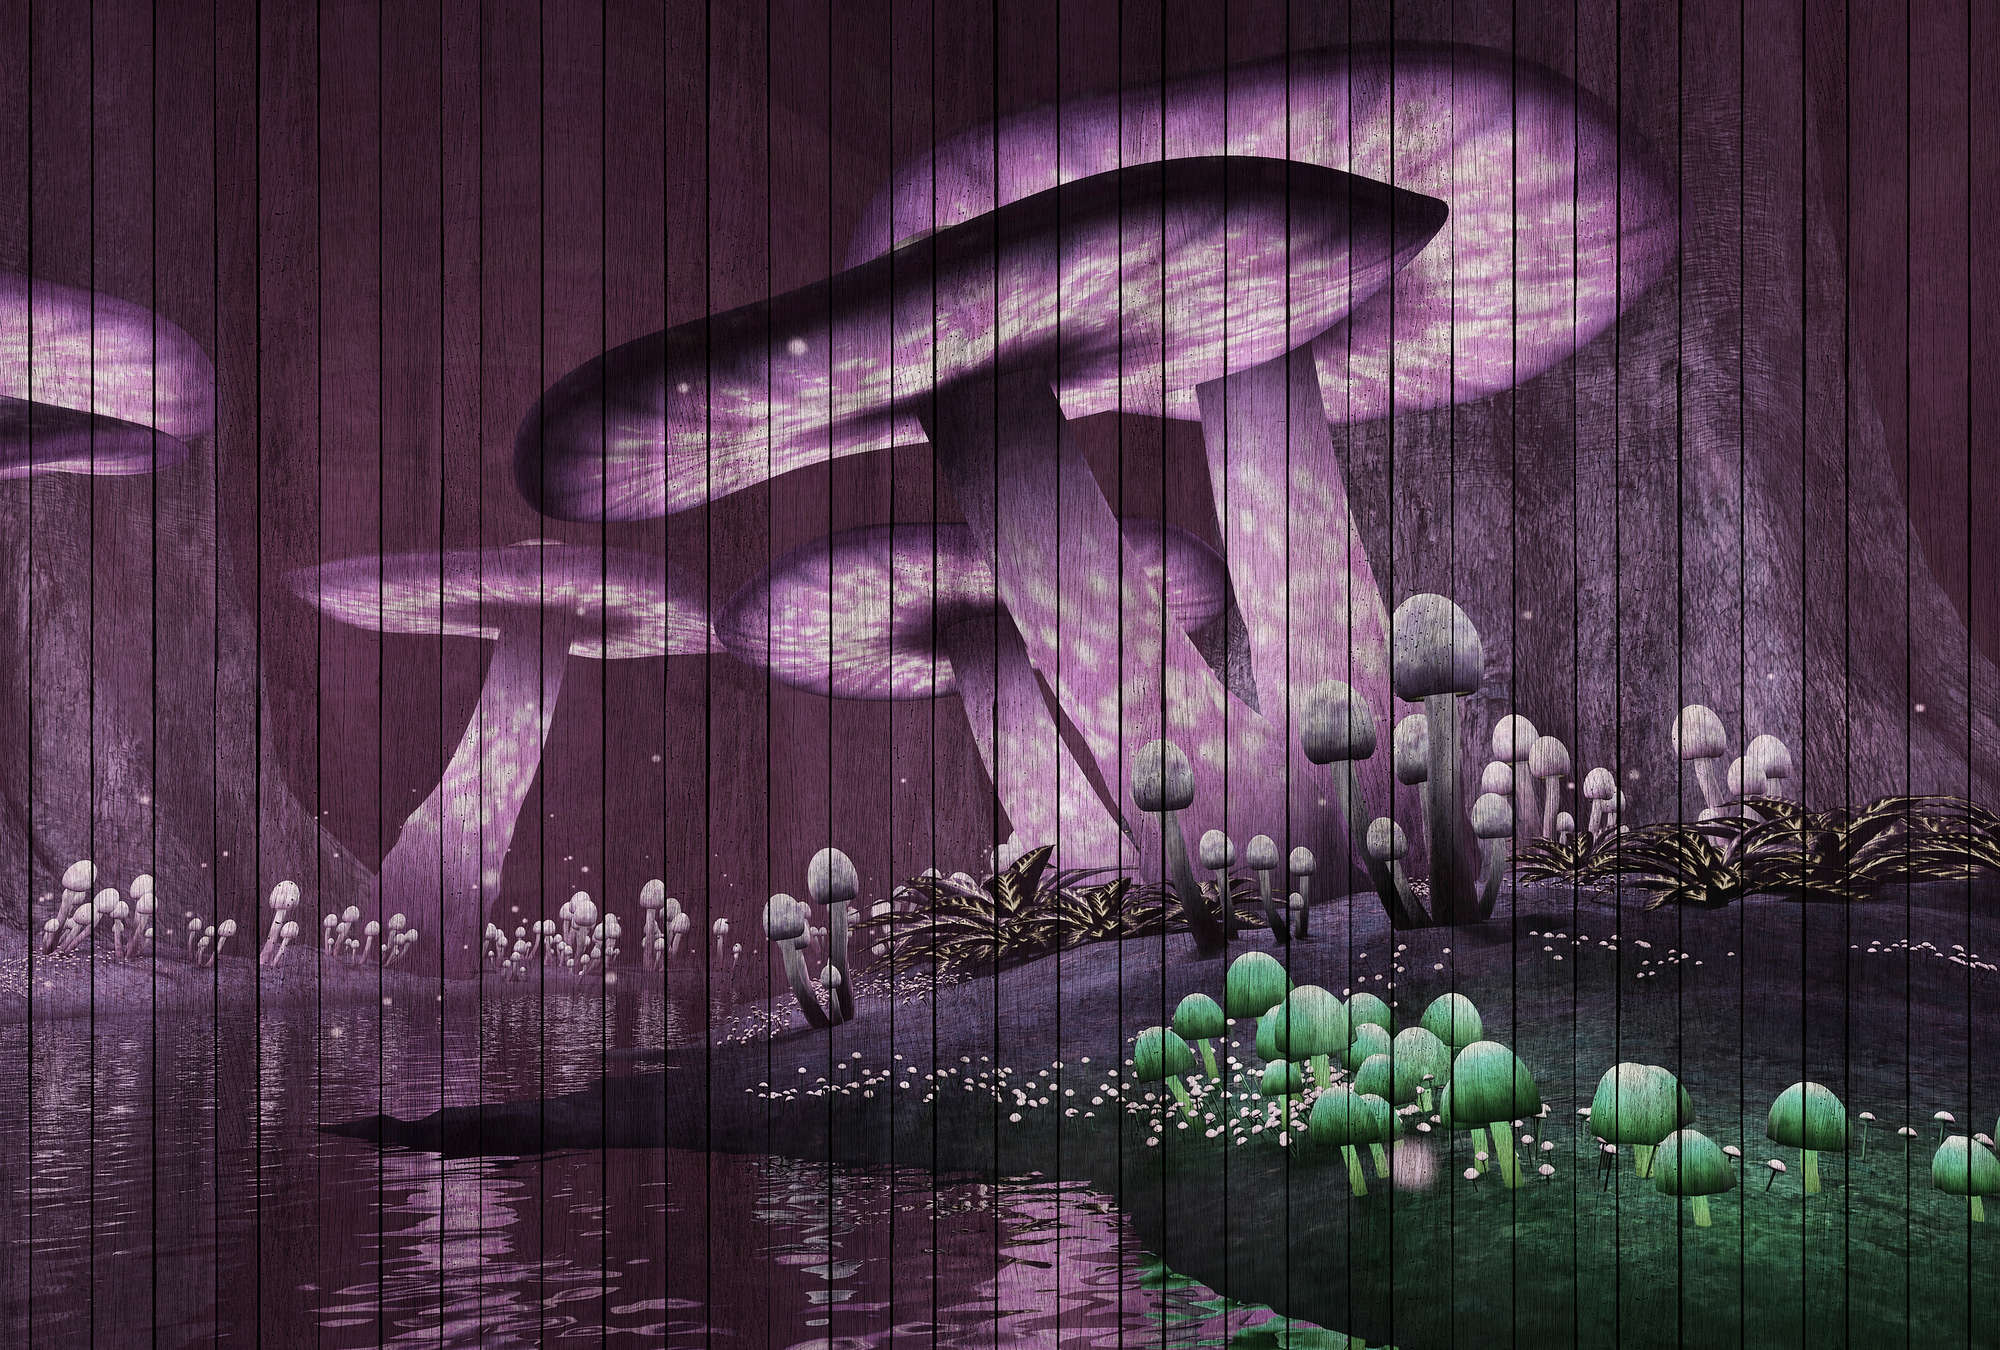             Fantasy 2 - Fototapete magischer Wald mit Holzpaneele Struktur – Grün, Violett | Mattes Glattvlies
        